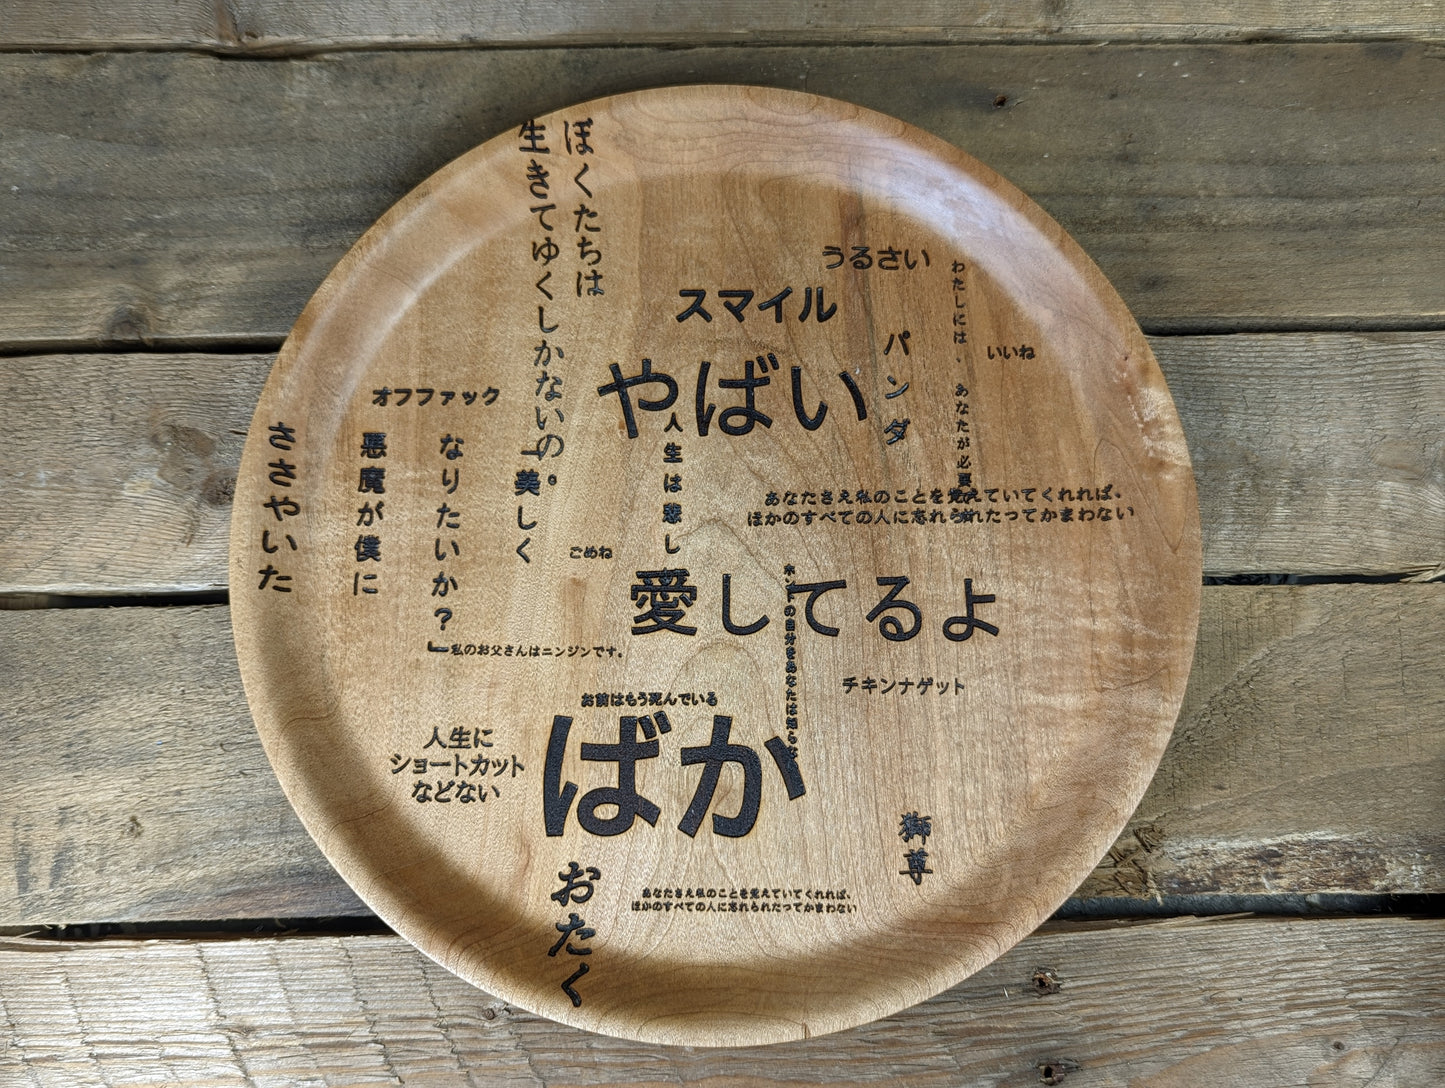 Japanese gibberish plate